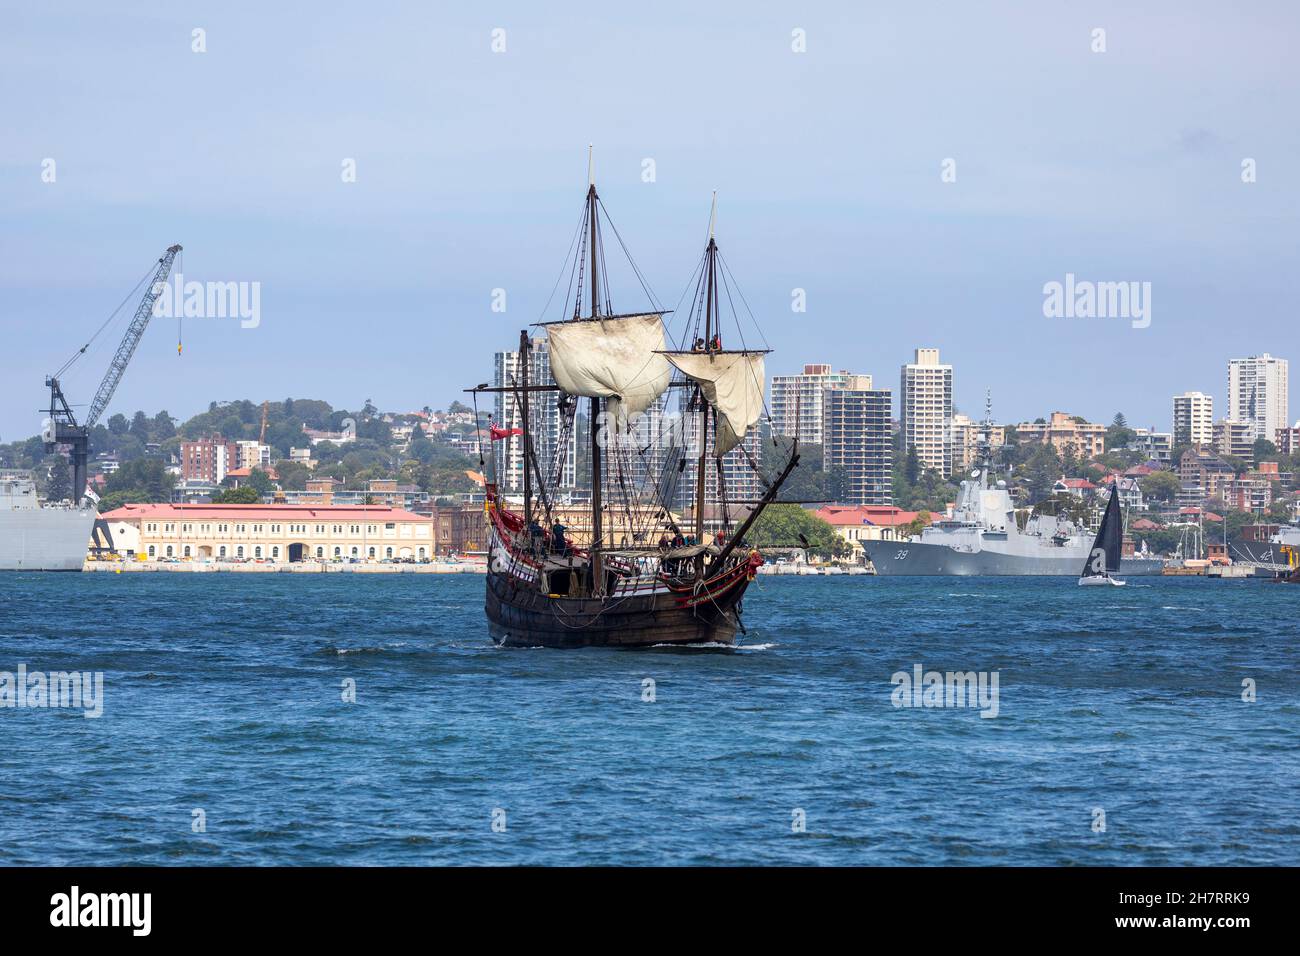 Traditionelles Segelboot im Hafen von Sydney, das an den australischen Marineschiffen vorbeifährt, die auf Garden Island, im Stadtzentrum von Sydney, NSW, Australien festgemacht sind Stockfoto